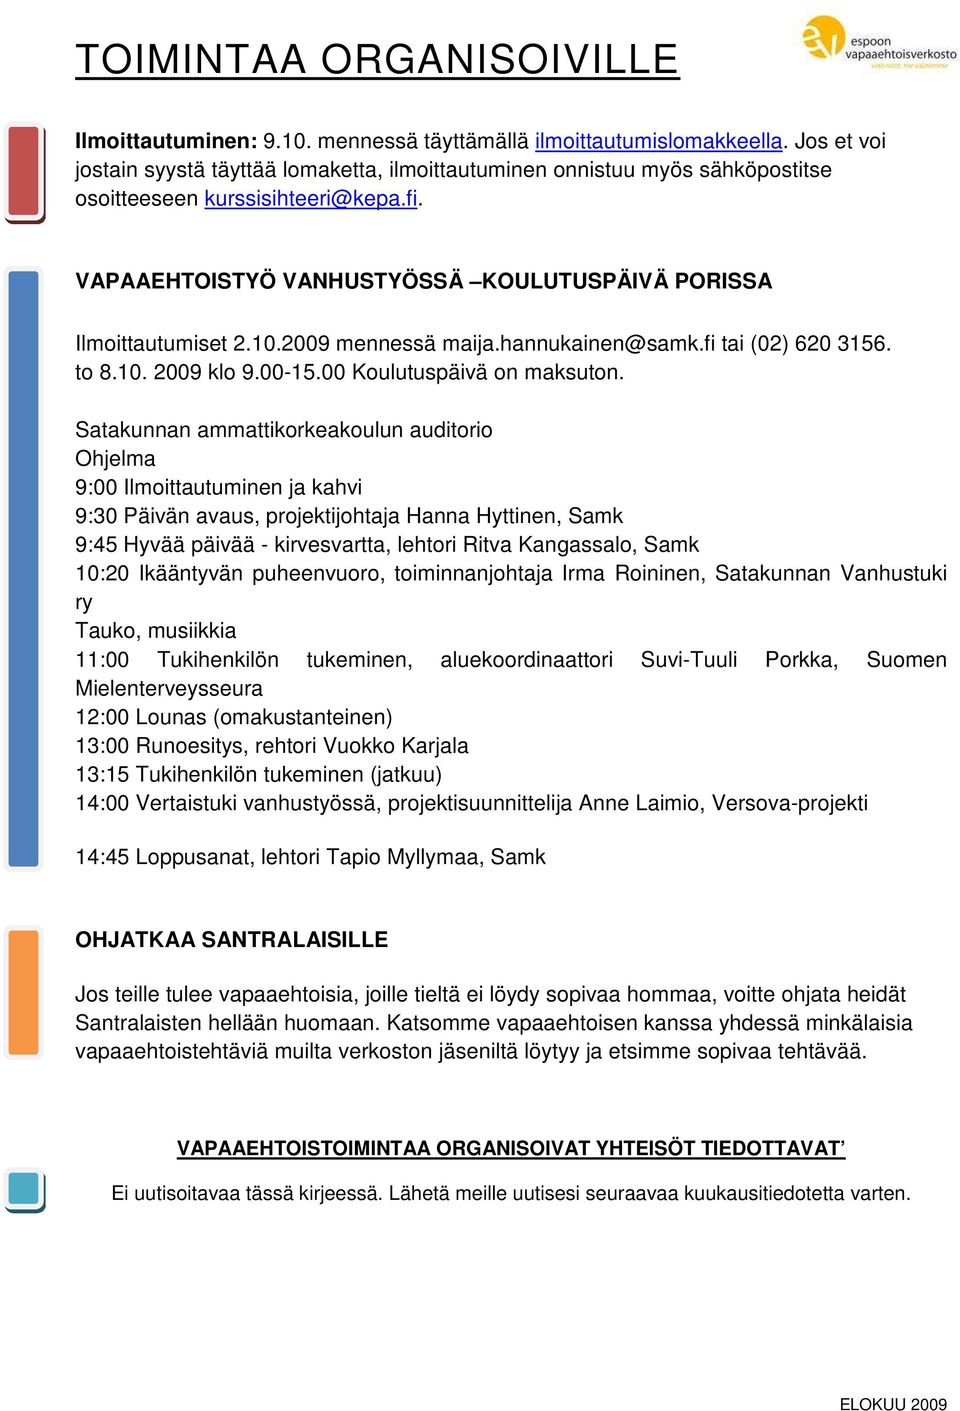 2009 mennessä maija.hannukainen@samk.fi tai (02) 620 3156. to 8.10. 2009 klo 9.00-15.00 Koulutuspäivä on maksuton.